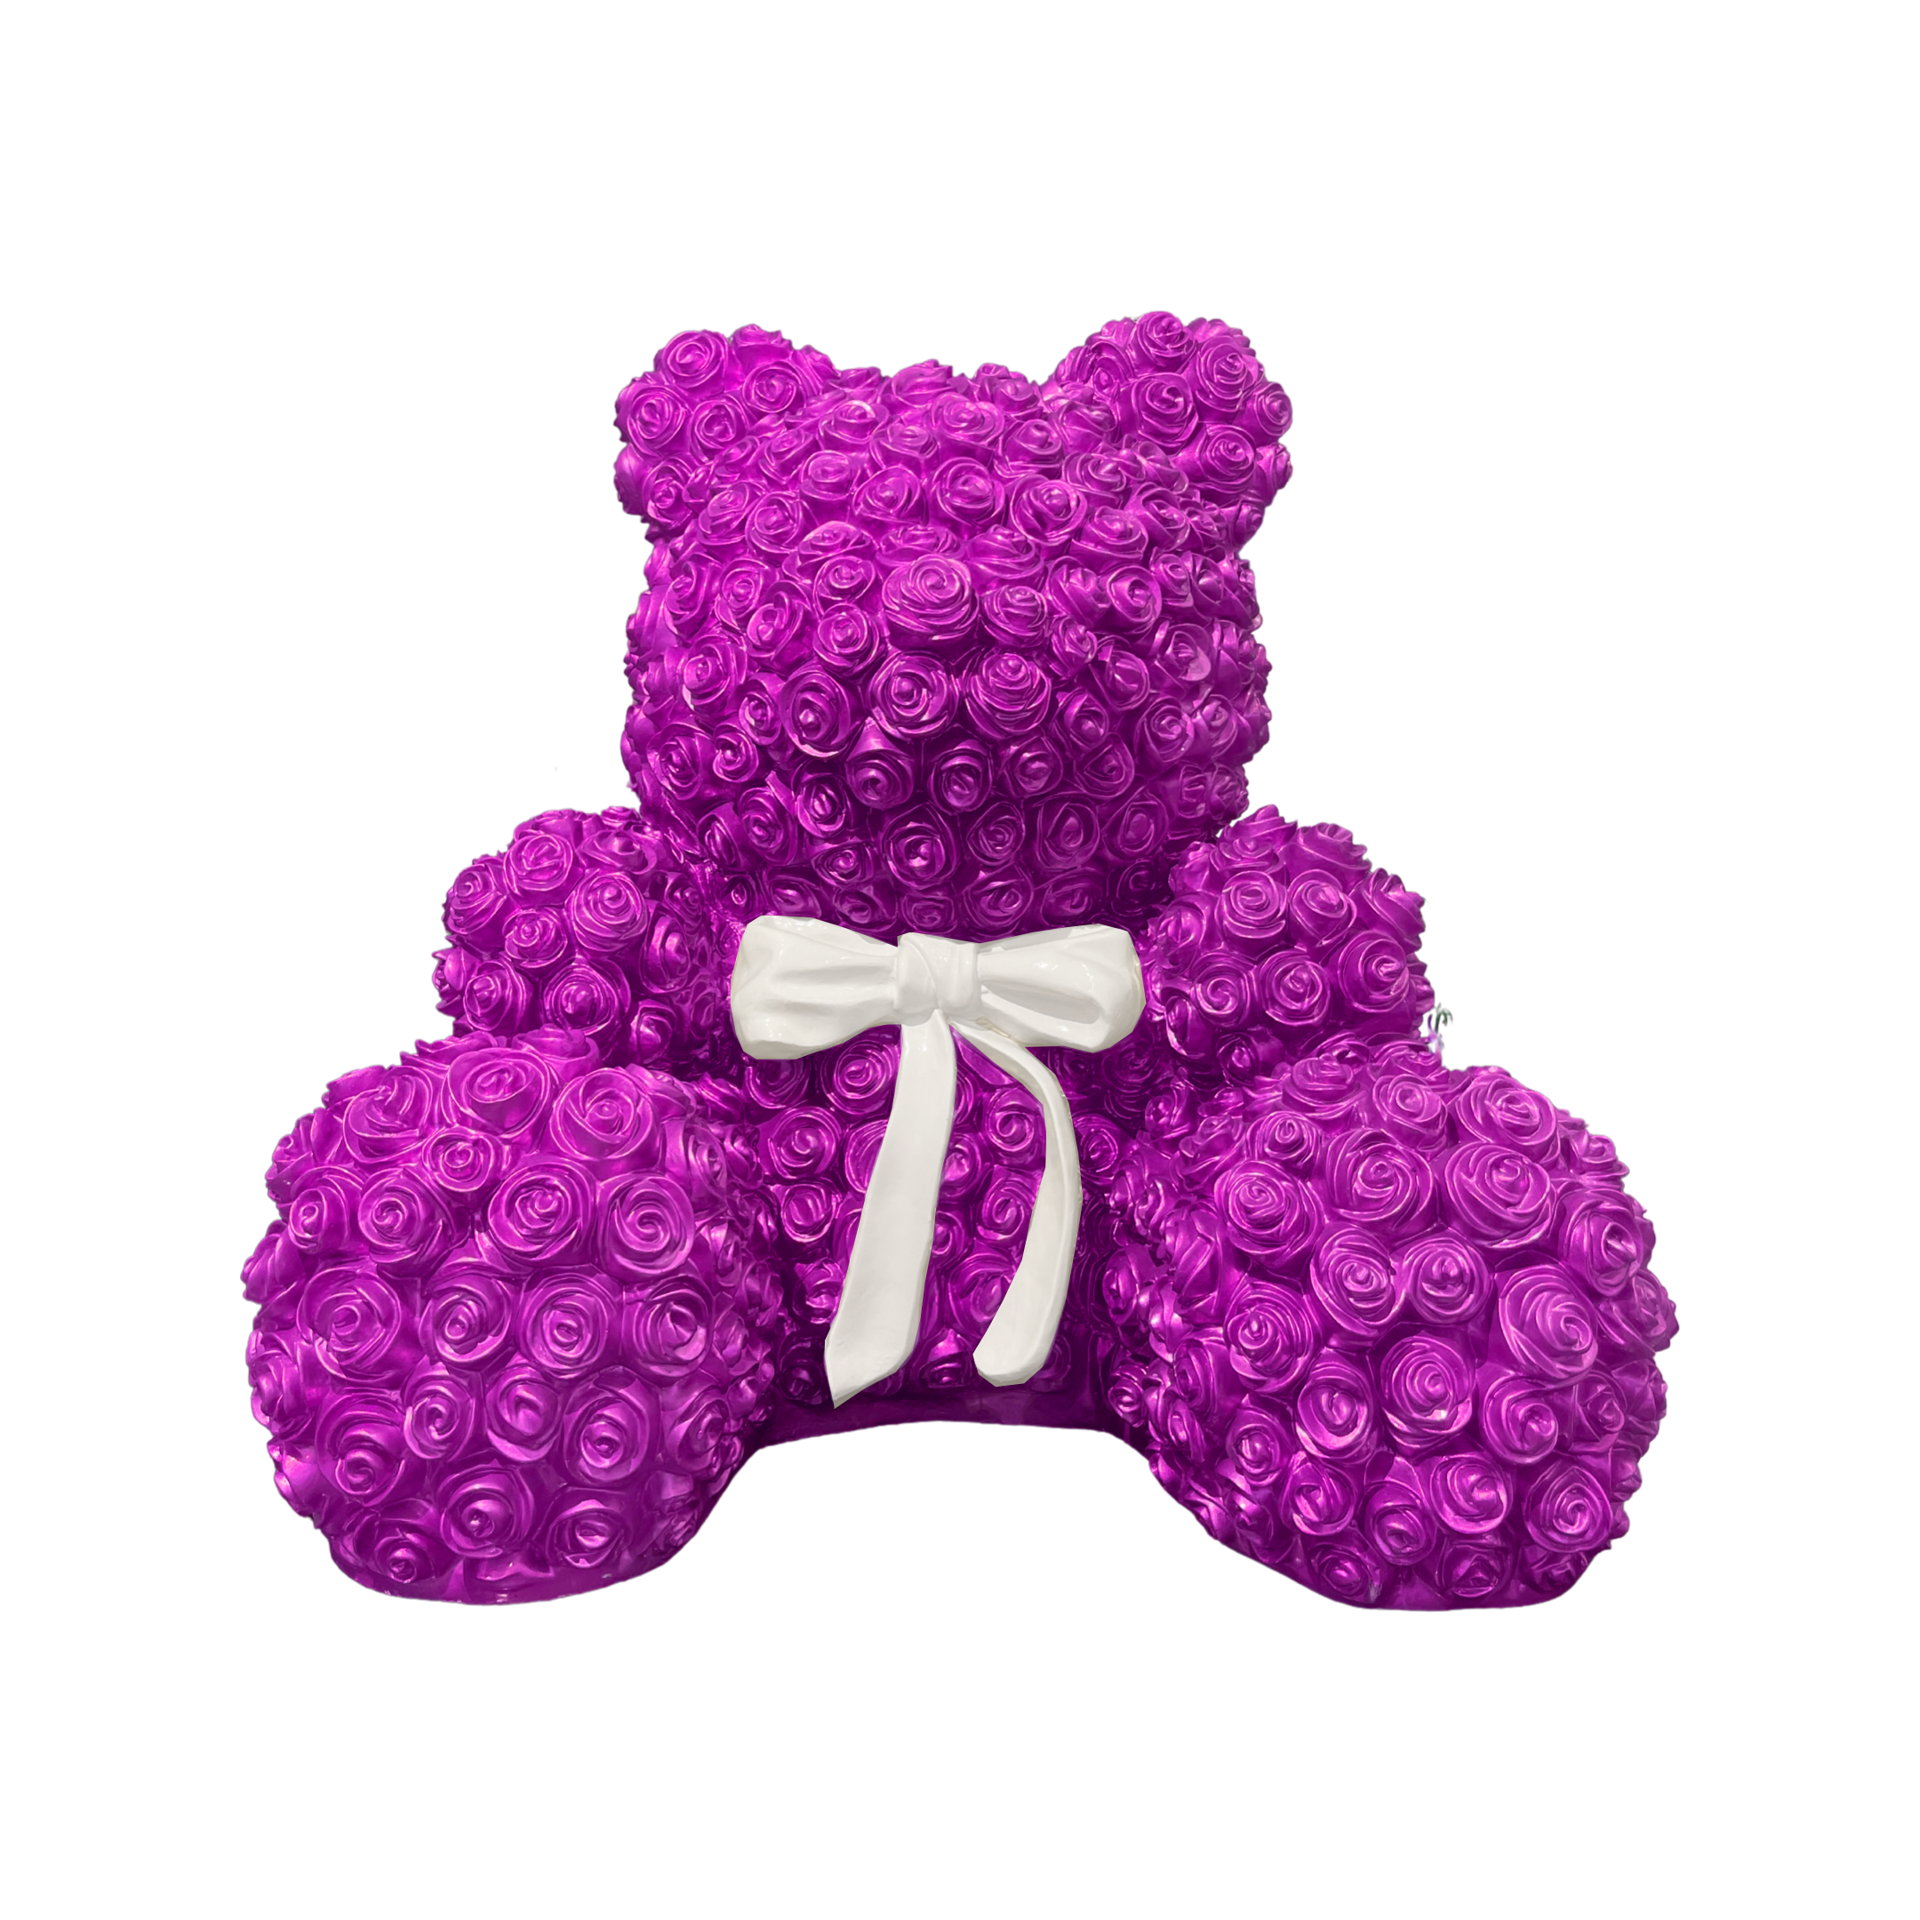 Hot Pink Flower Bear by Flower Bears Sculptures by Elena Bulatova